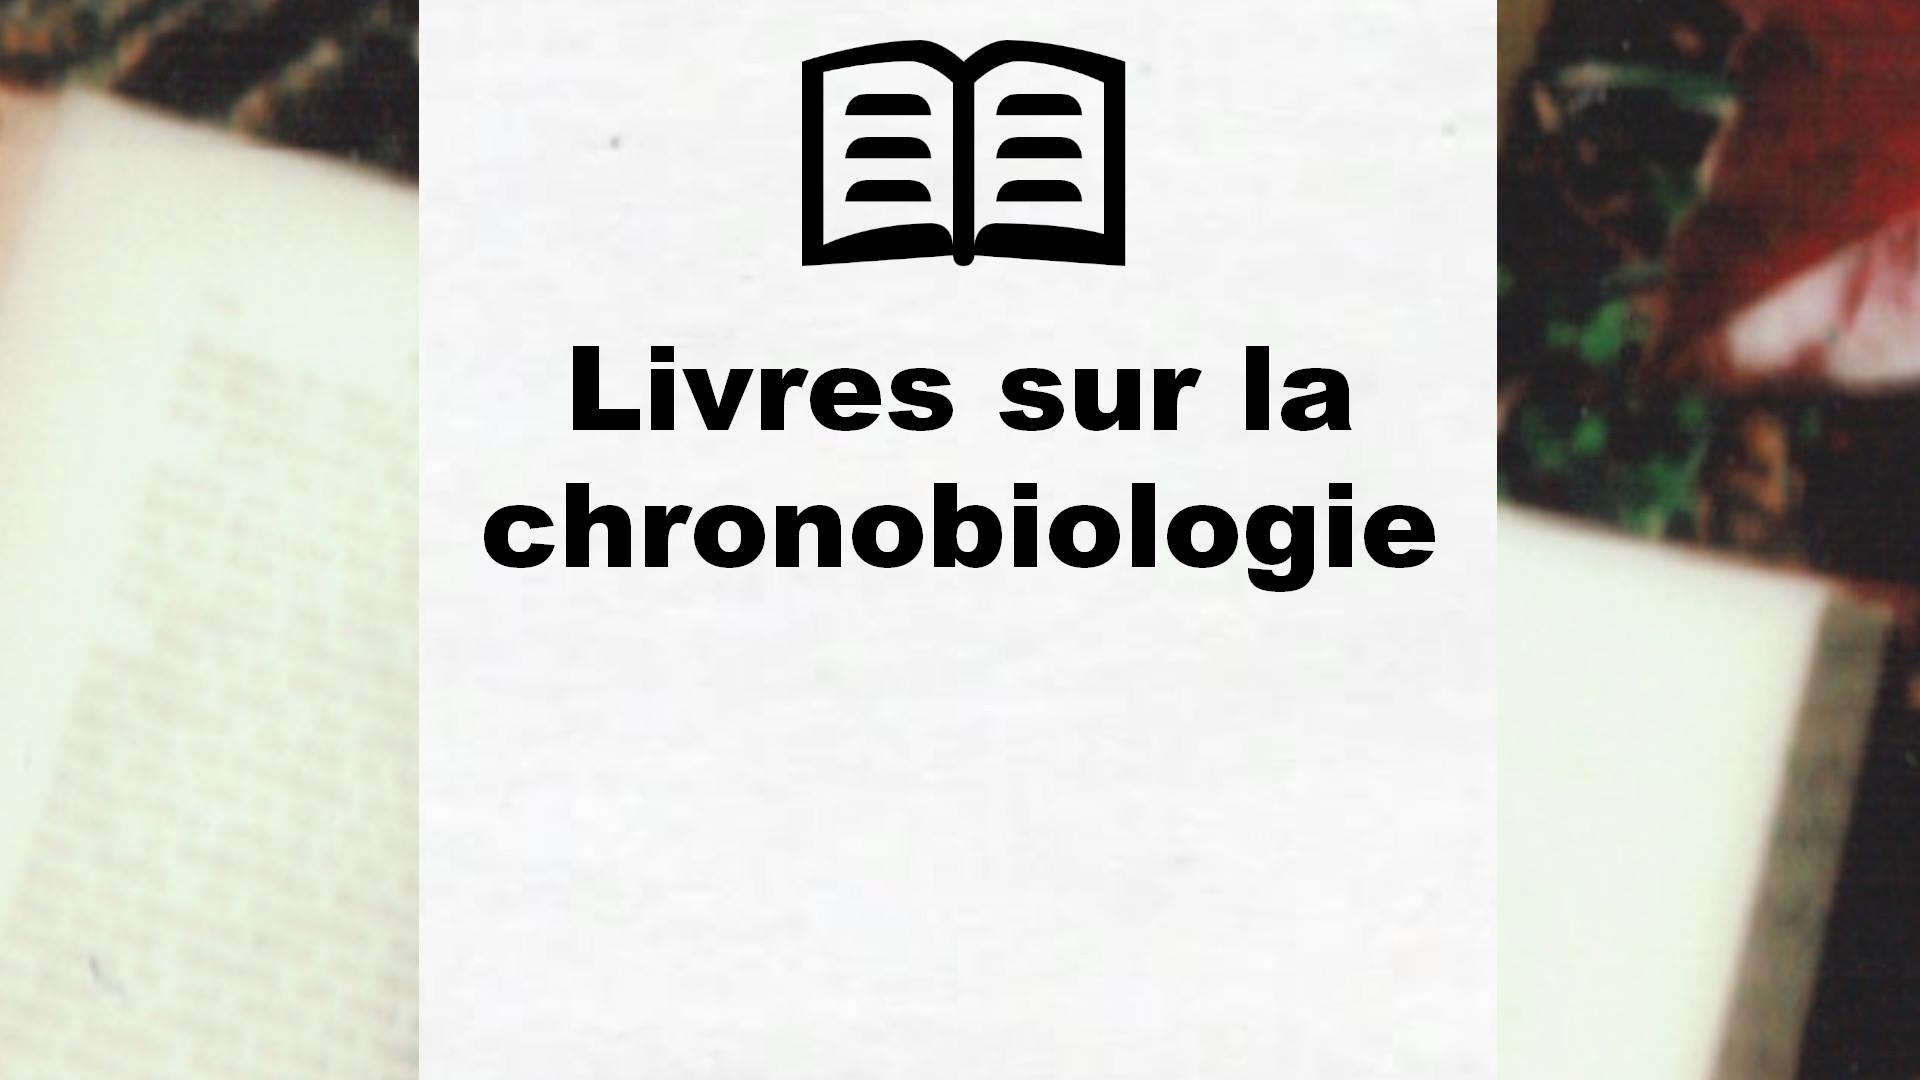 Livres sur la chronobiologie